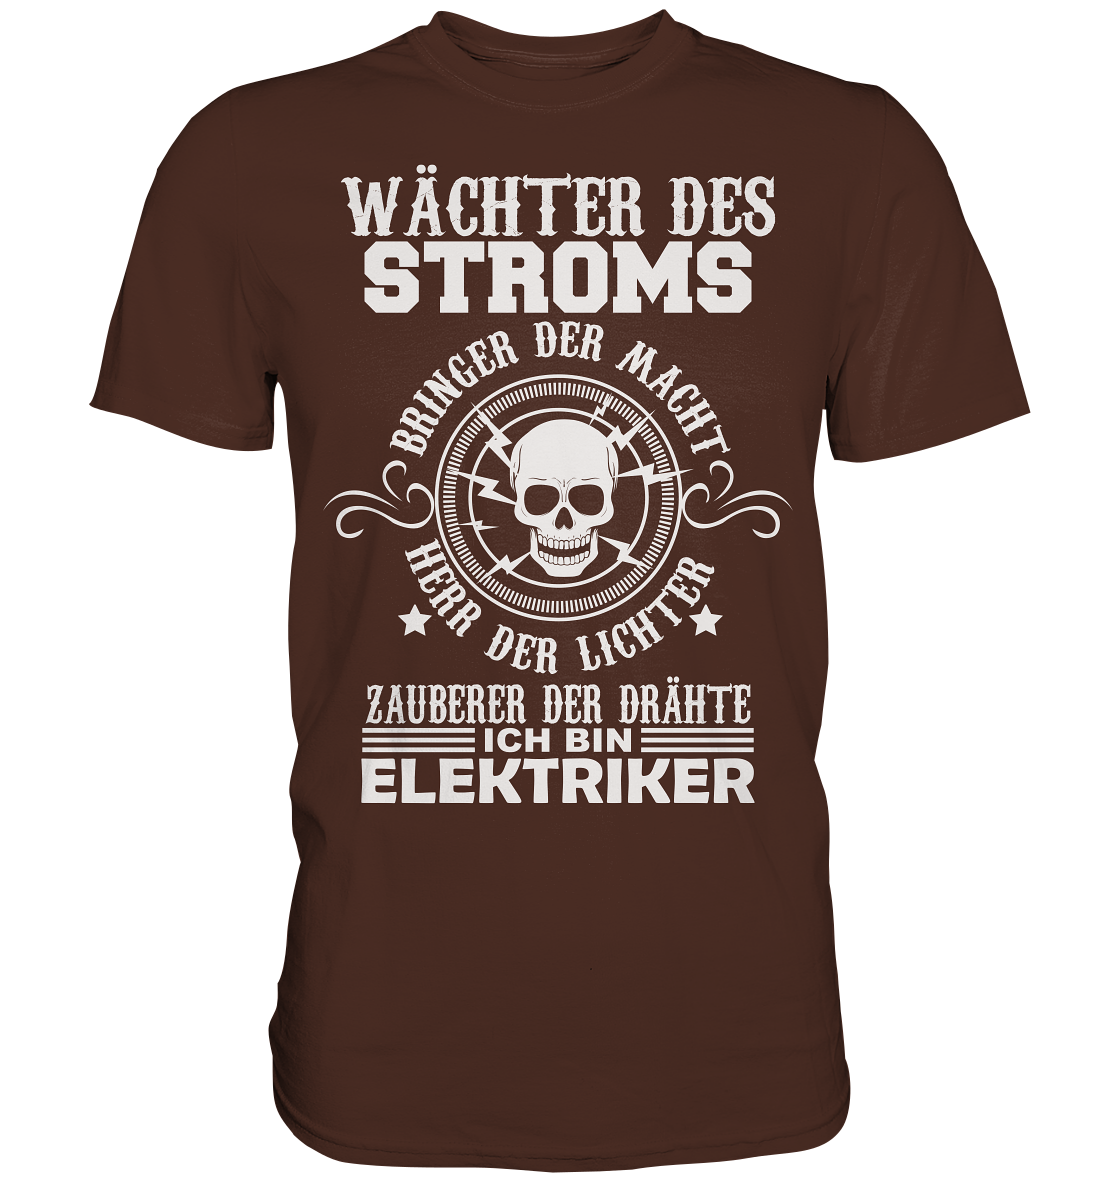 Wächter des Stroms, bringer der Macht, Herr der Lichter, Zauberer der Drähte - ich bin Elektriker - Premium Shirt